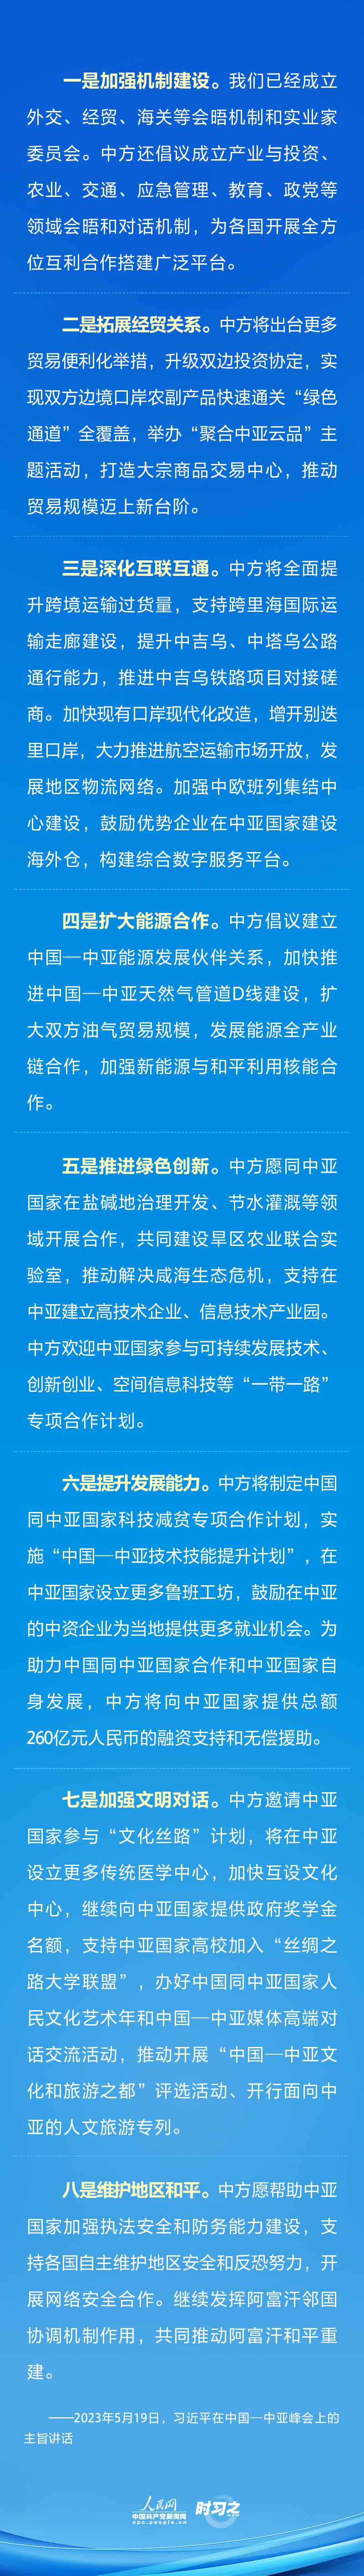 谱写中国同中亚国家关系新篇章 习近平提出“八点倡议”